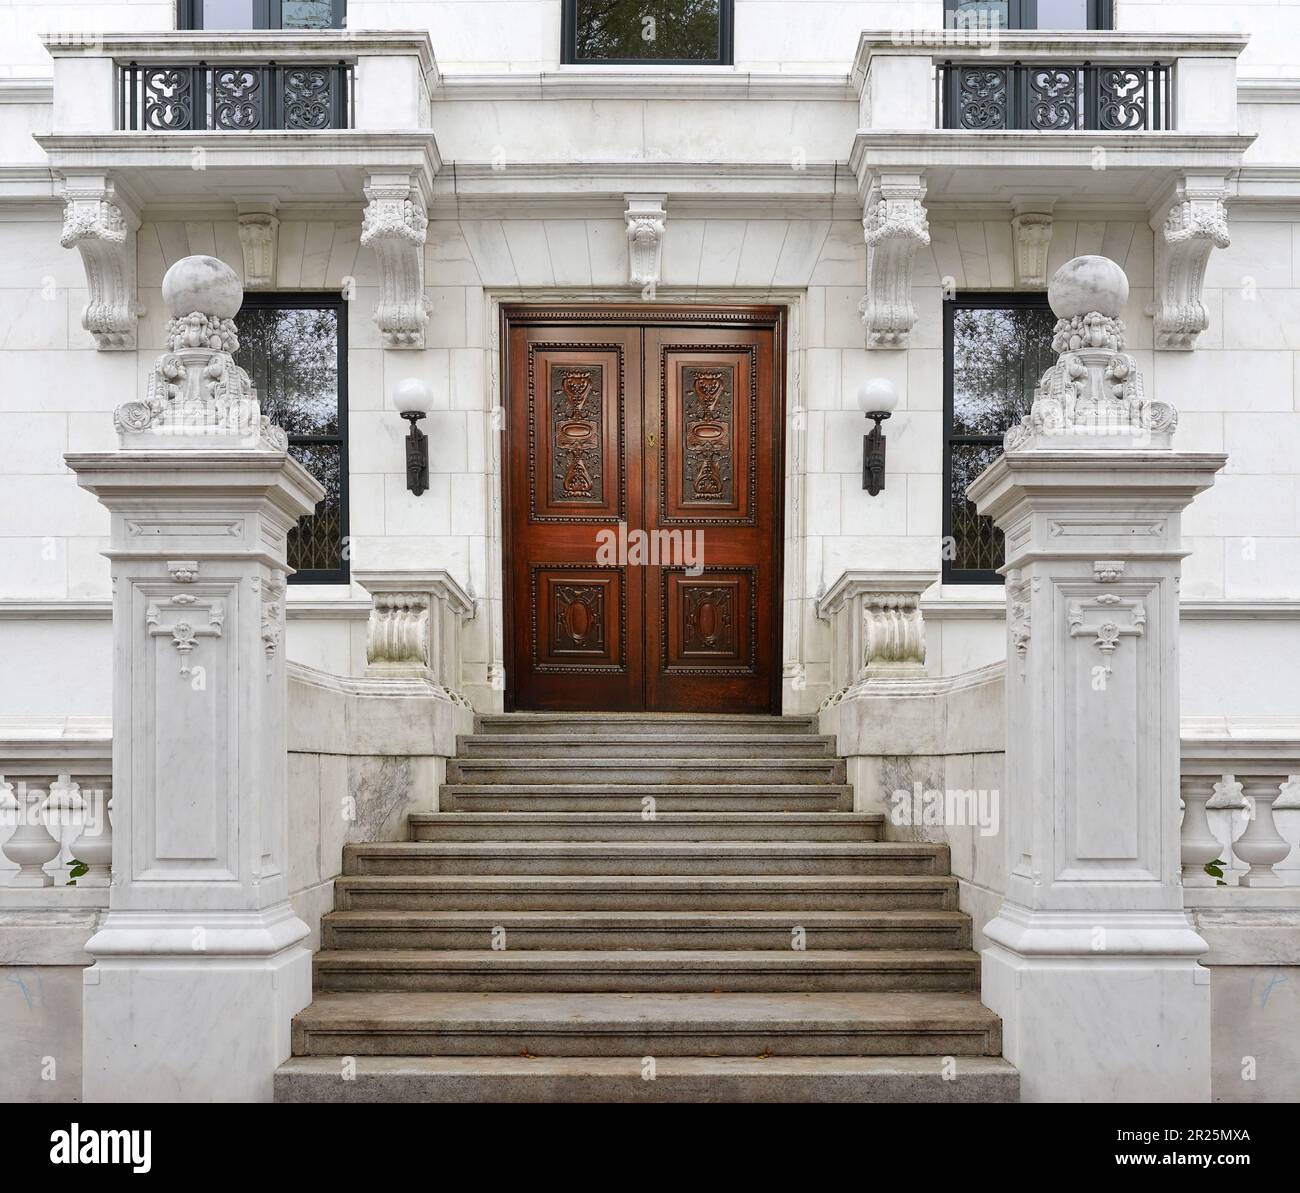 Eingang zum Appartementgebäude mit langer Treppe und eleganter Eingangstür aus geschnitztem Holz Stockfoto